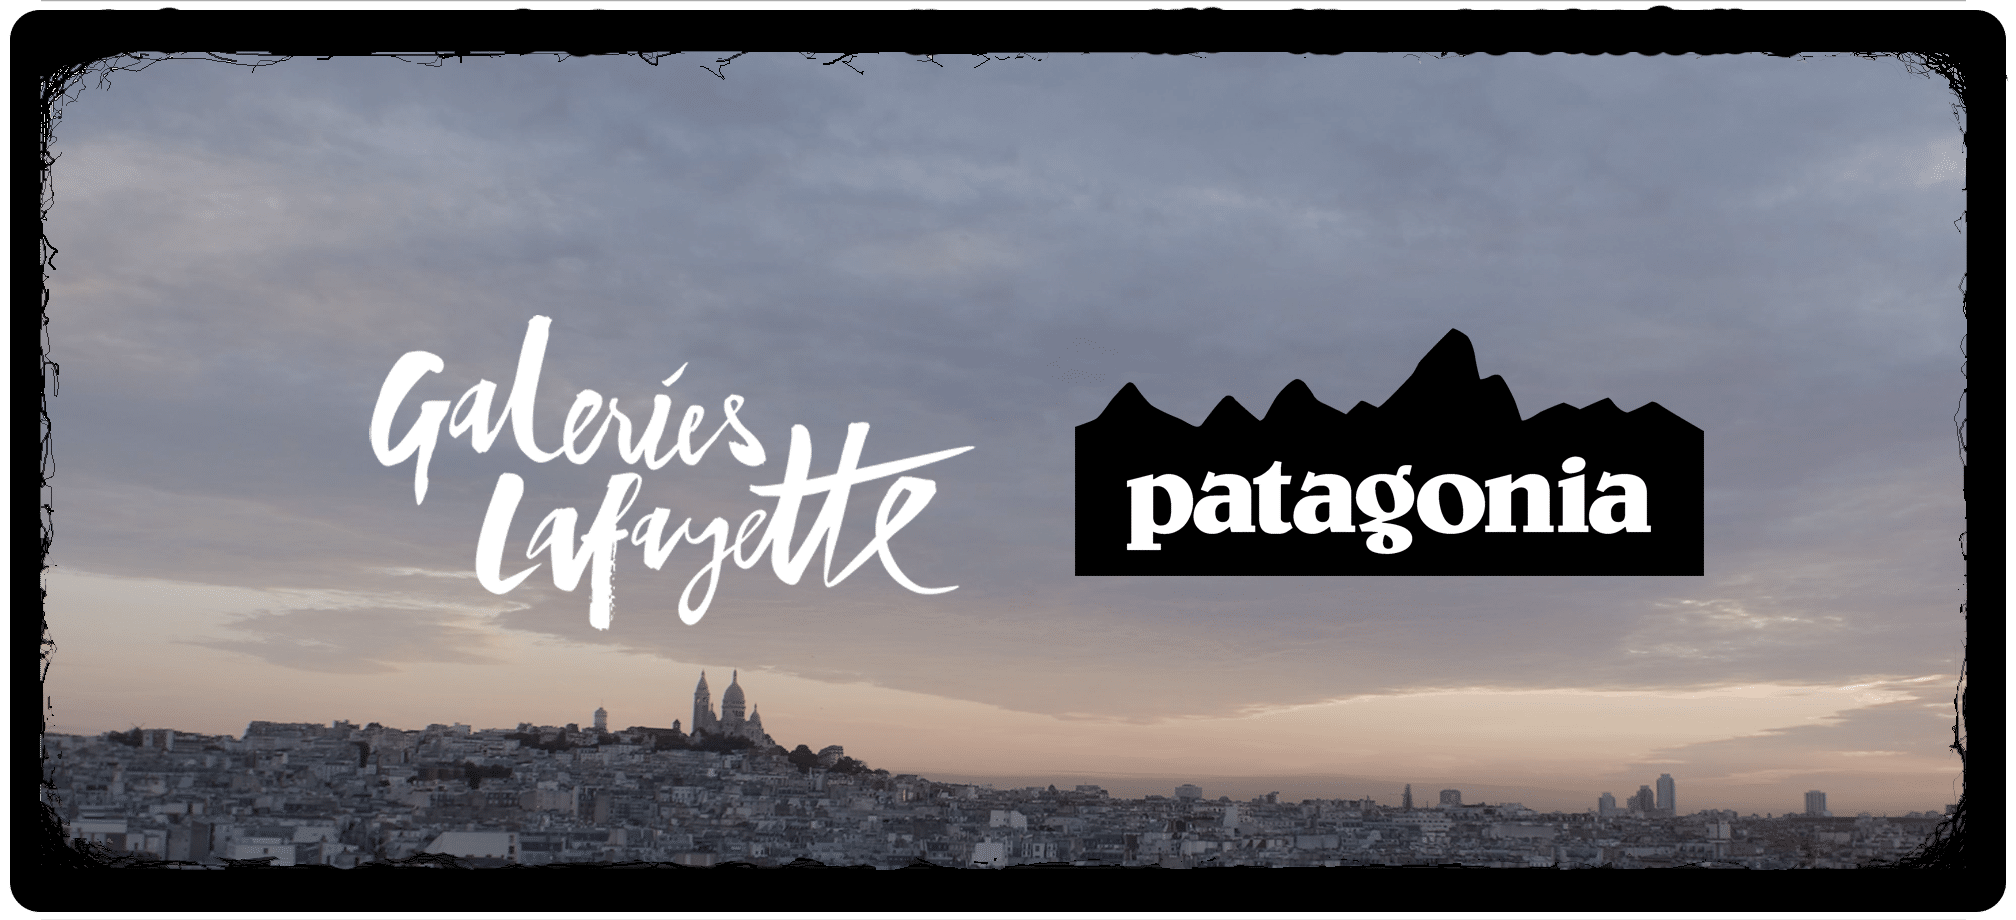 Patagoniapng